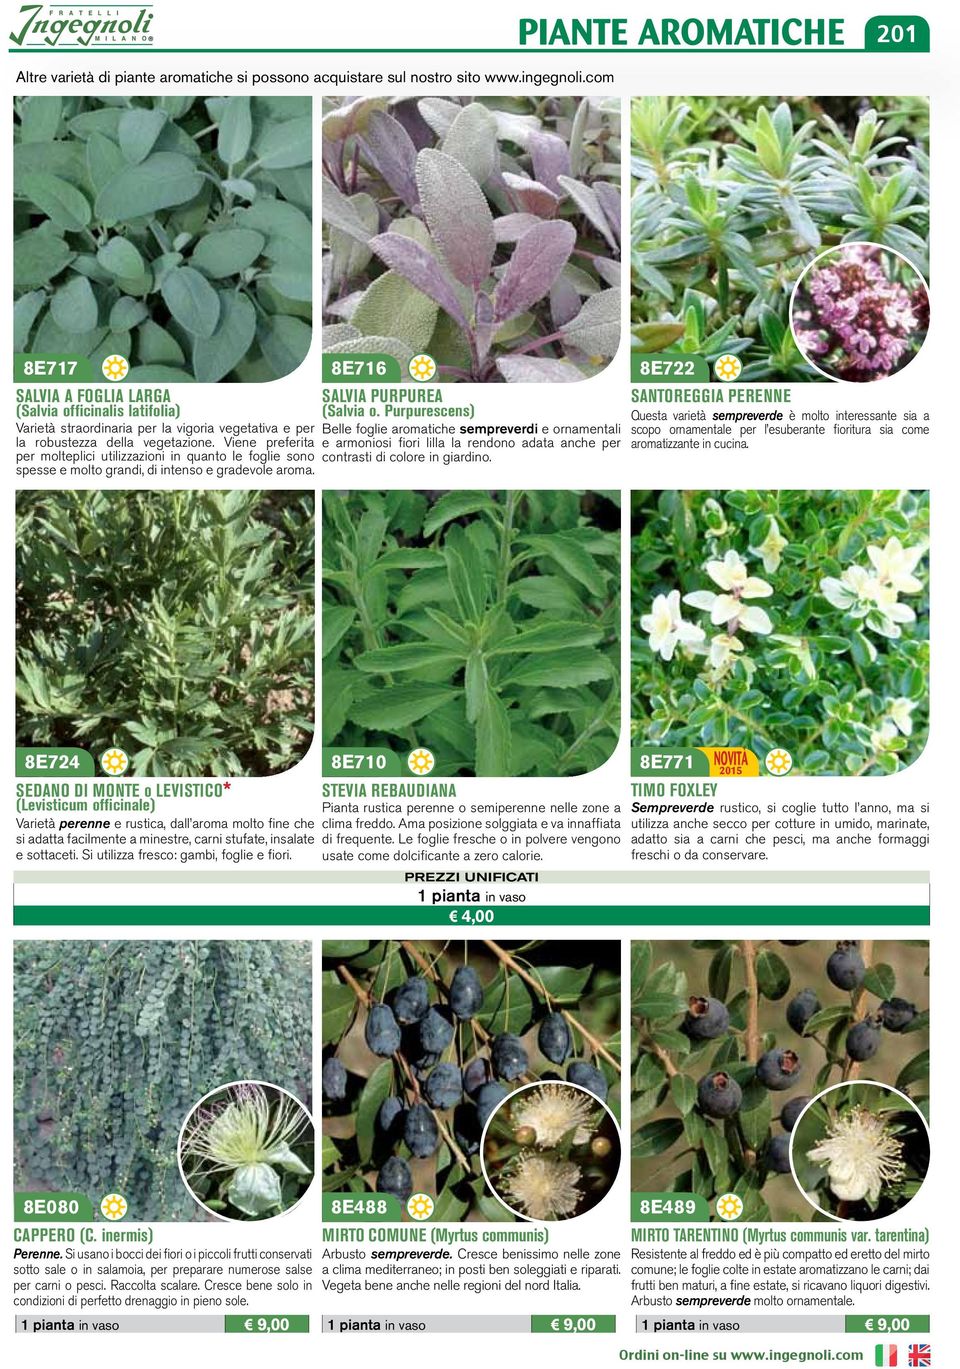 Viene preferita per molteplici utilizzazioni in quanto le foglie sono spesse e molto grandi, di intenso e gradevole aroma. 8E716 SALVIA PURPUREA (Salvia o.